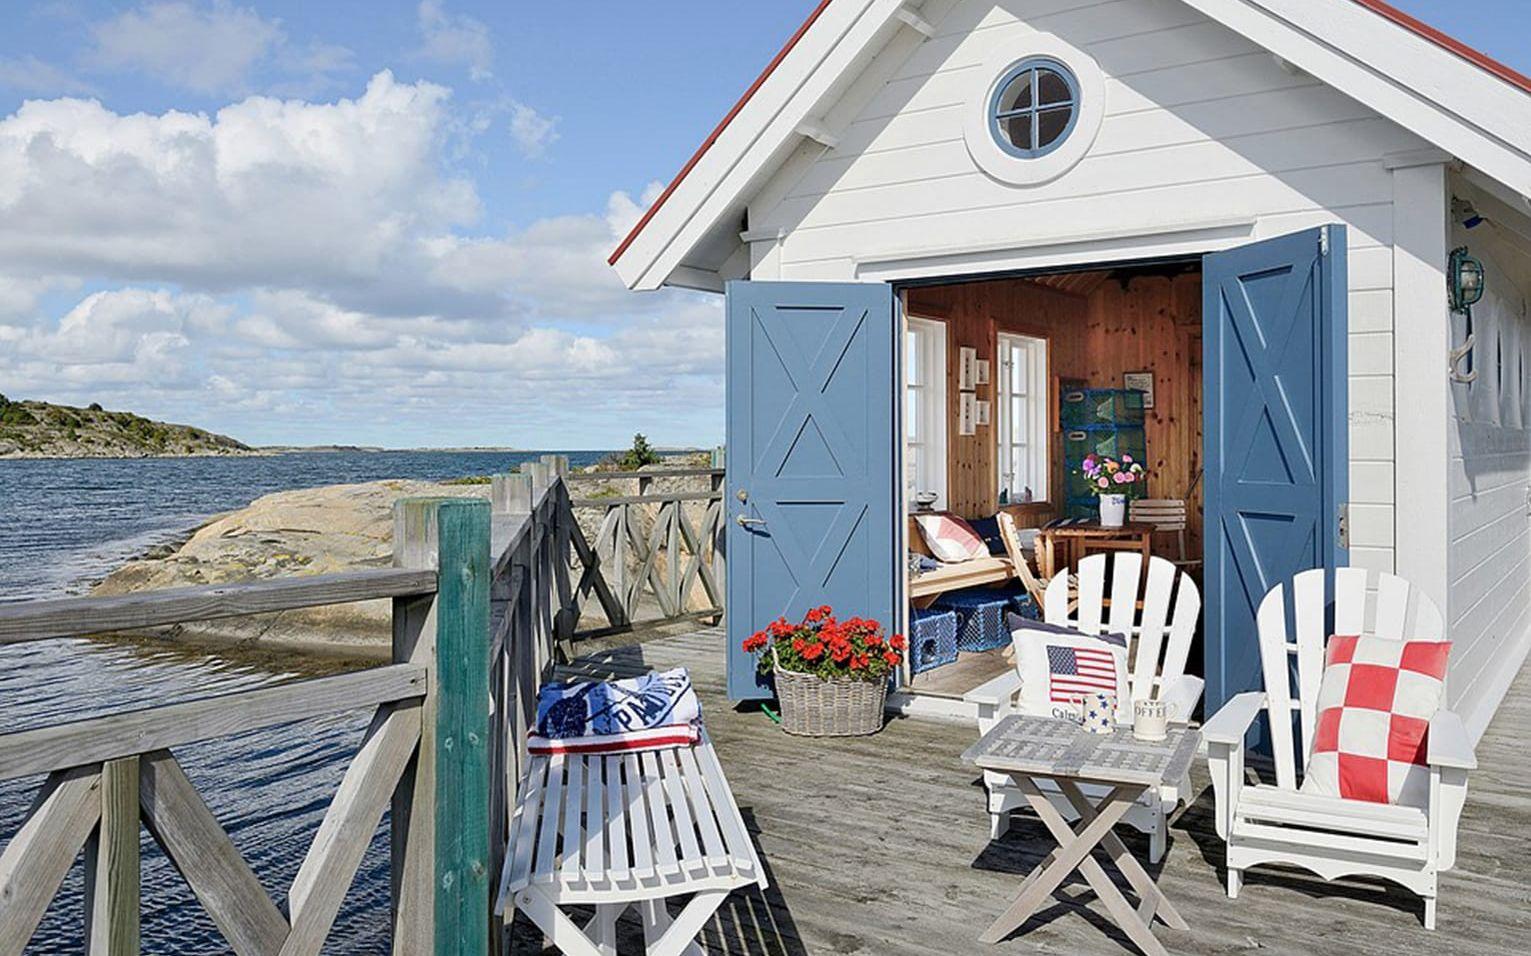 Båthuset ligger i anslutning till bryggan. Foto: Fredrik Karlsson/SE360